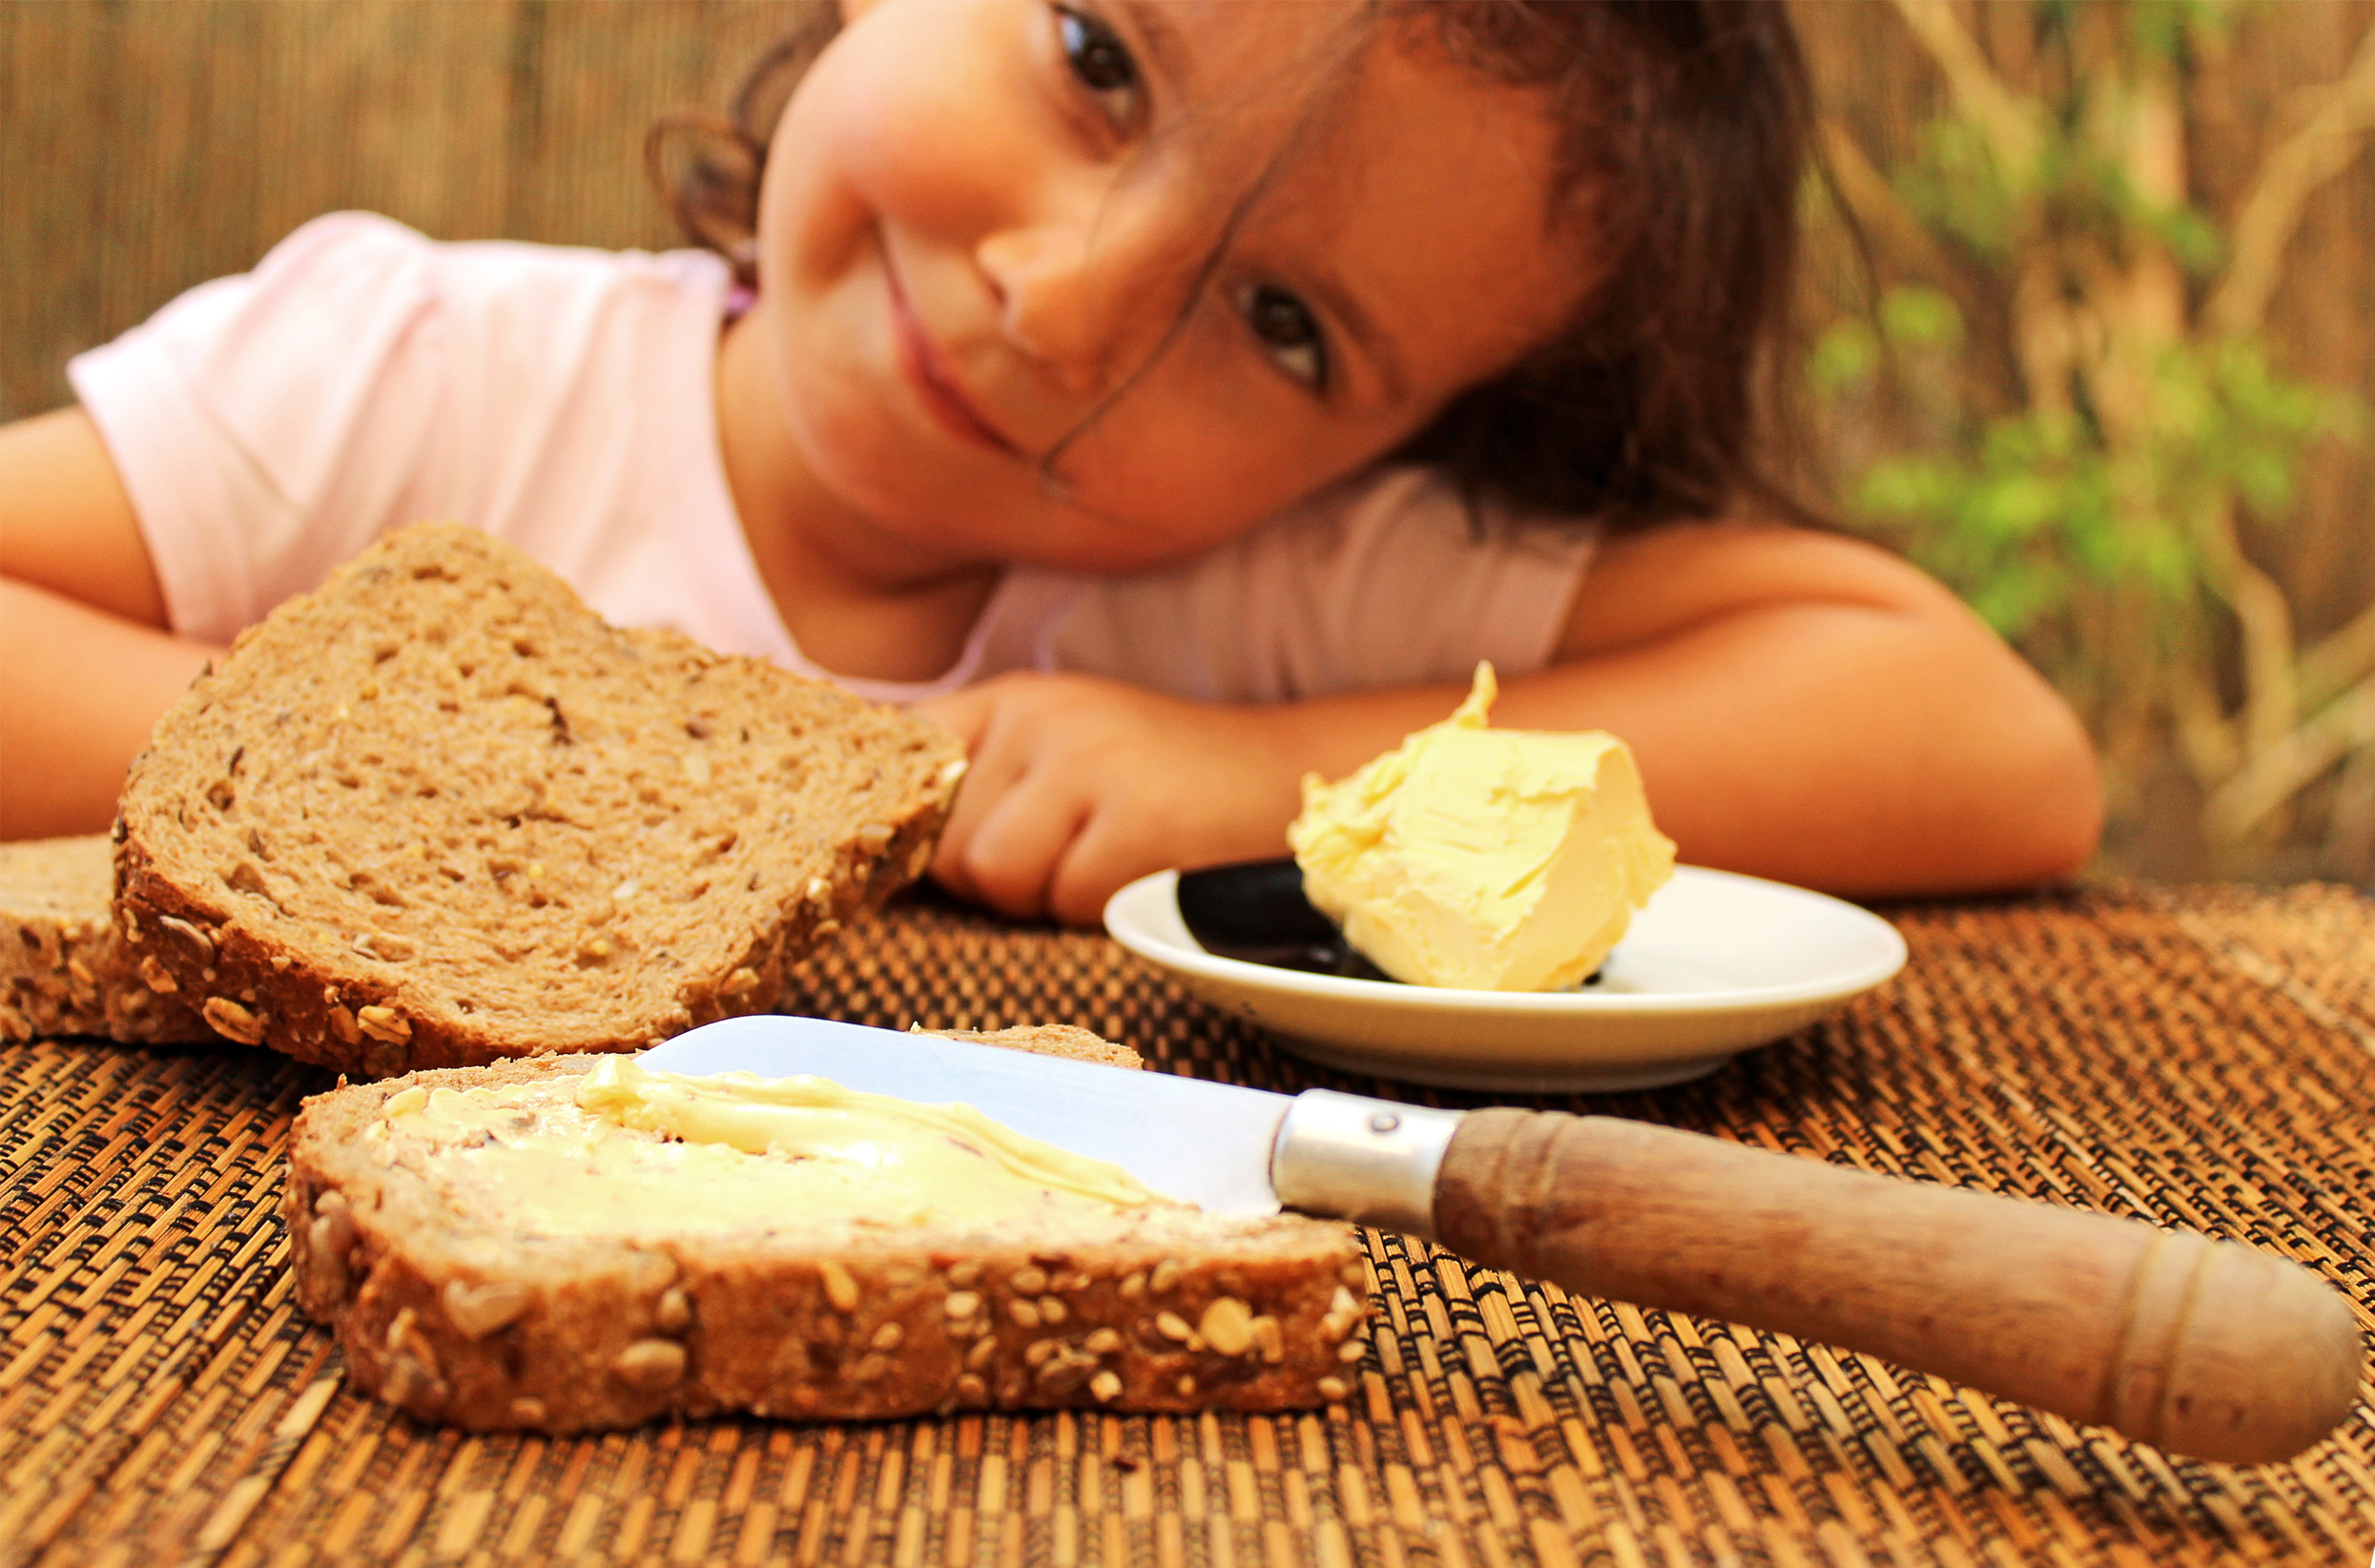 Сливочное масло здоровье. Человек ест хлеб. Хлеб для детей. Хлеб с маслом. Девочка с хлебом.